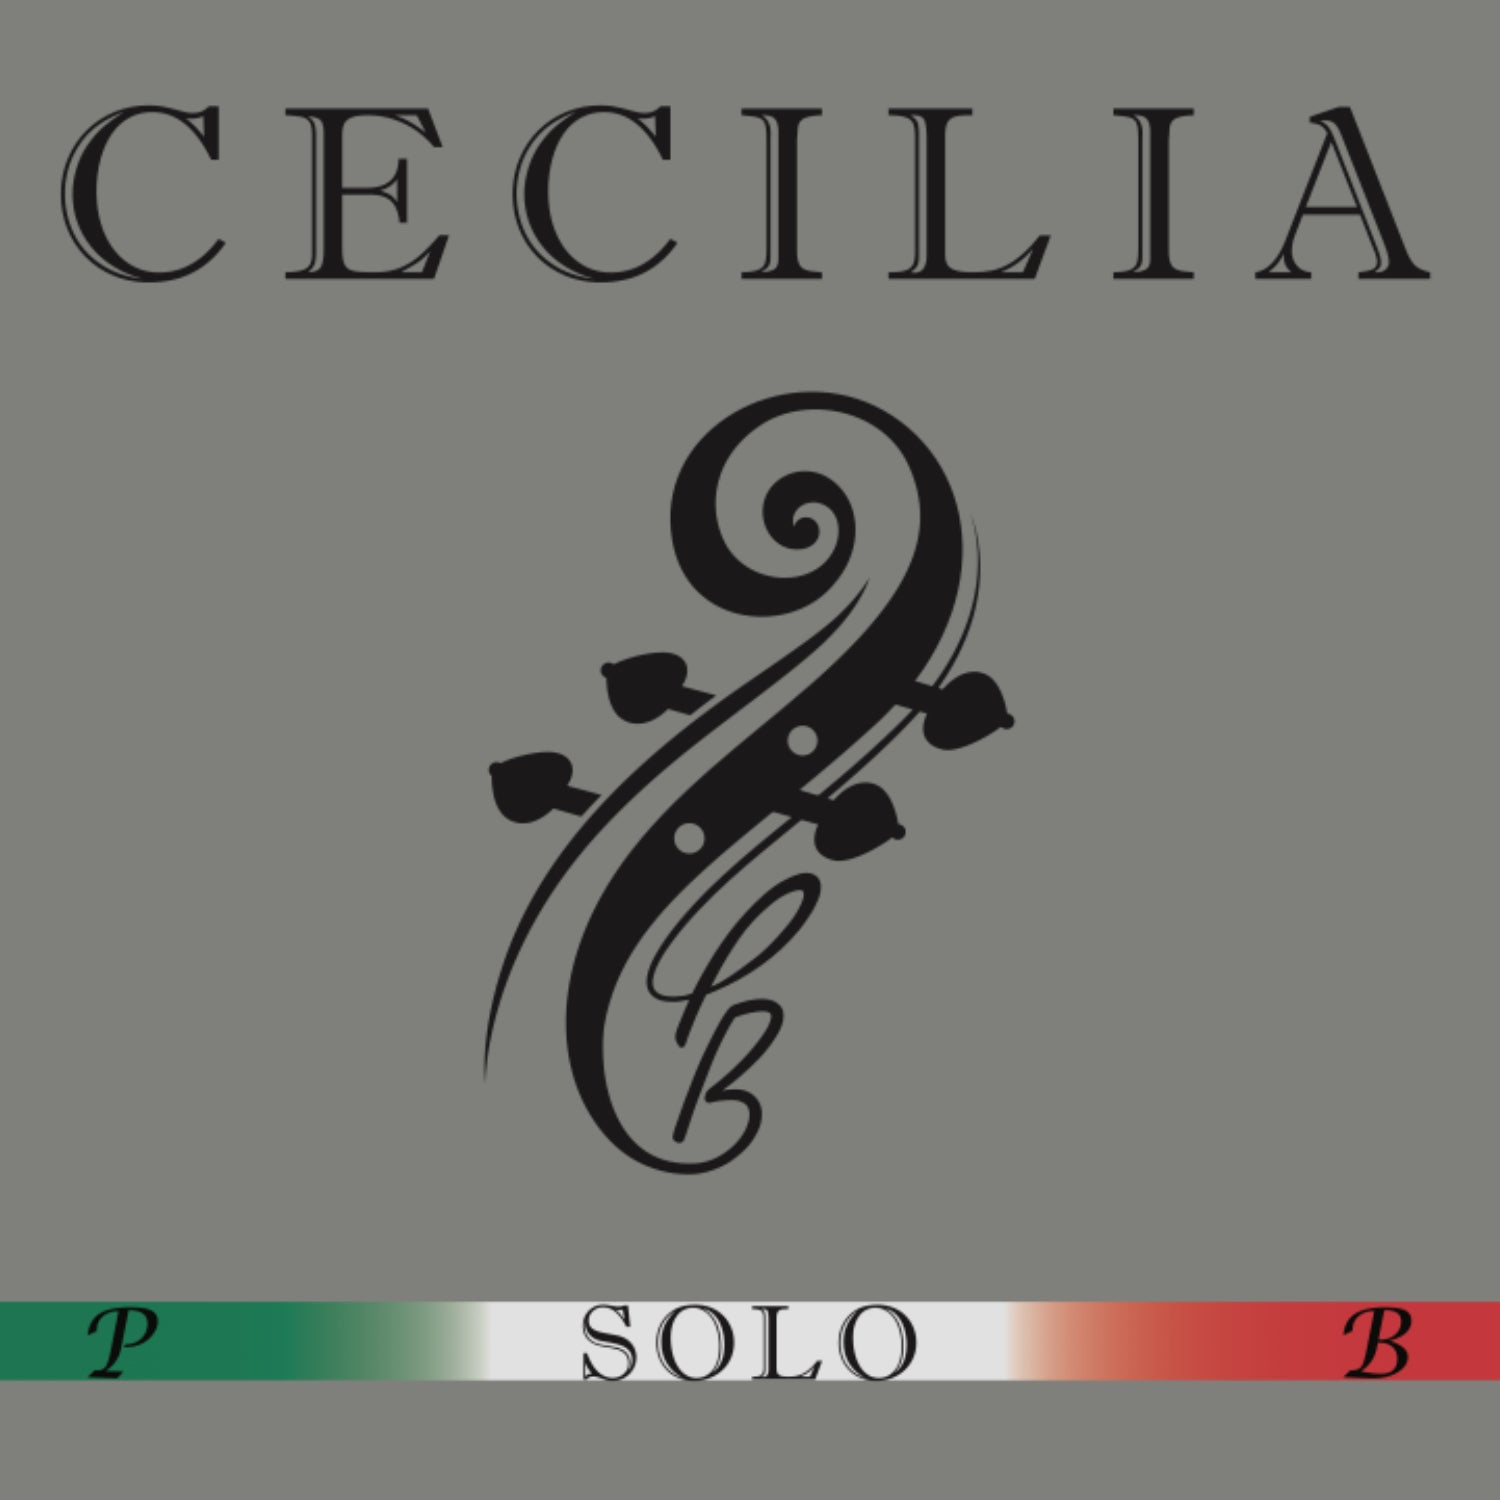 CECILIA SOLO Viola MINI with Spreader